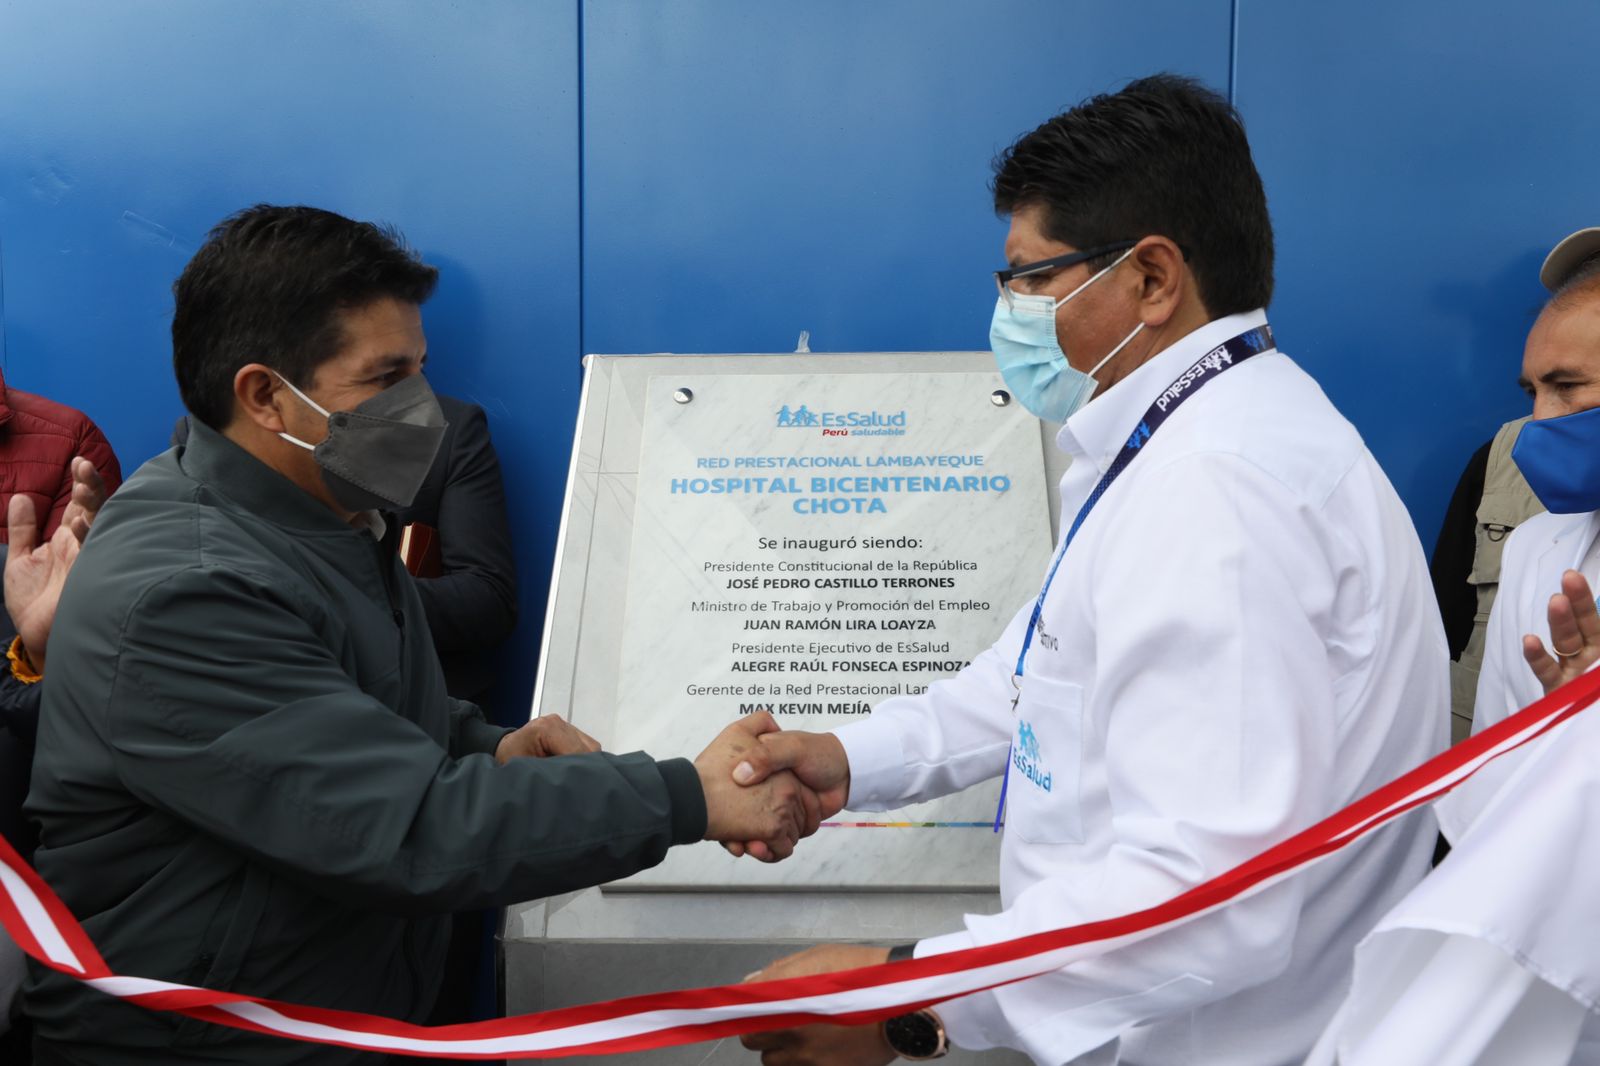 Essalud - Cajamarca: EsSalud inaugura hospital Bicentenario en Chota que beneficiará a más de 22 mil pobladores